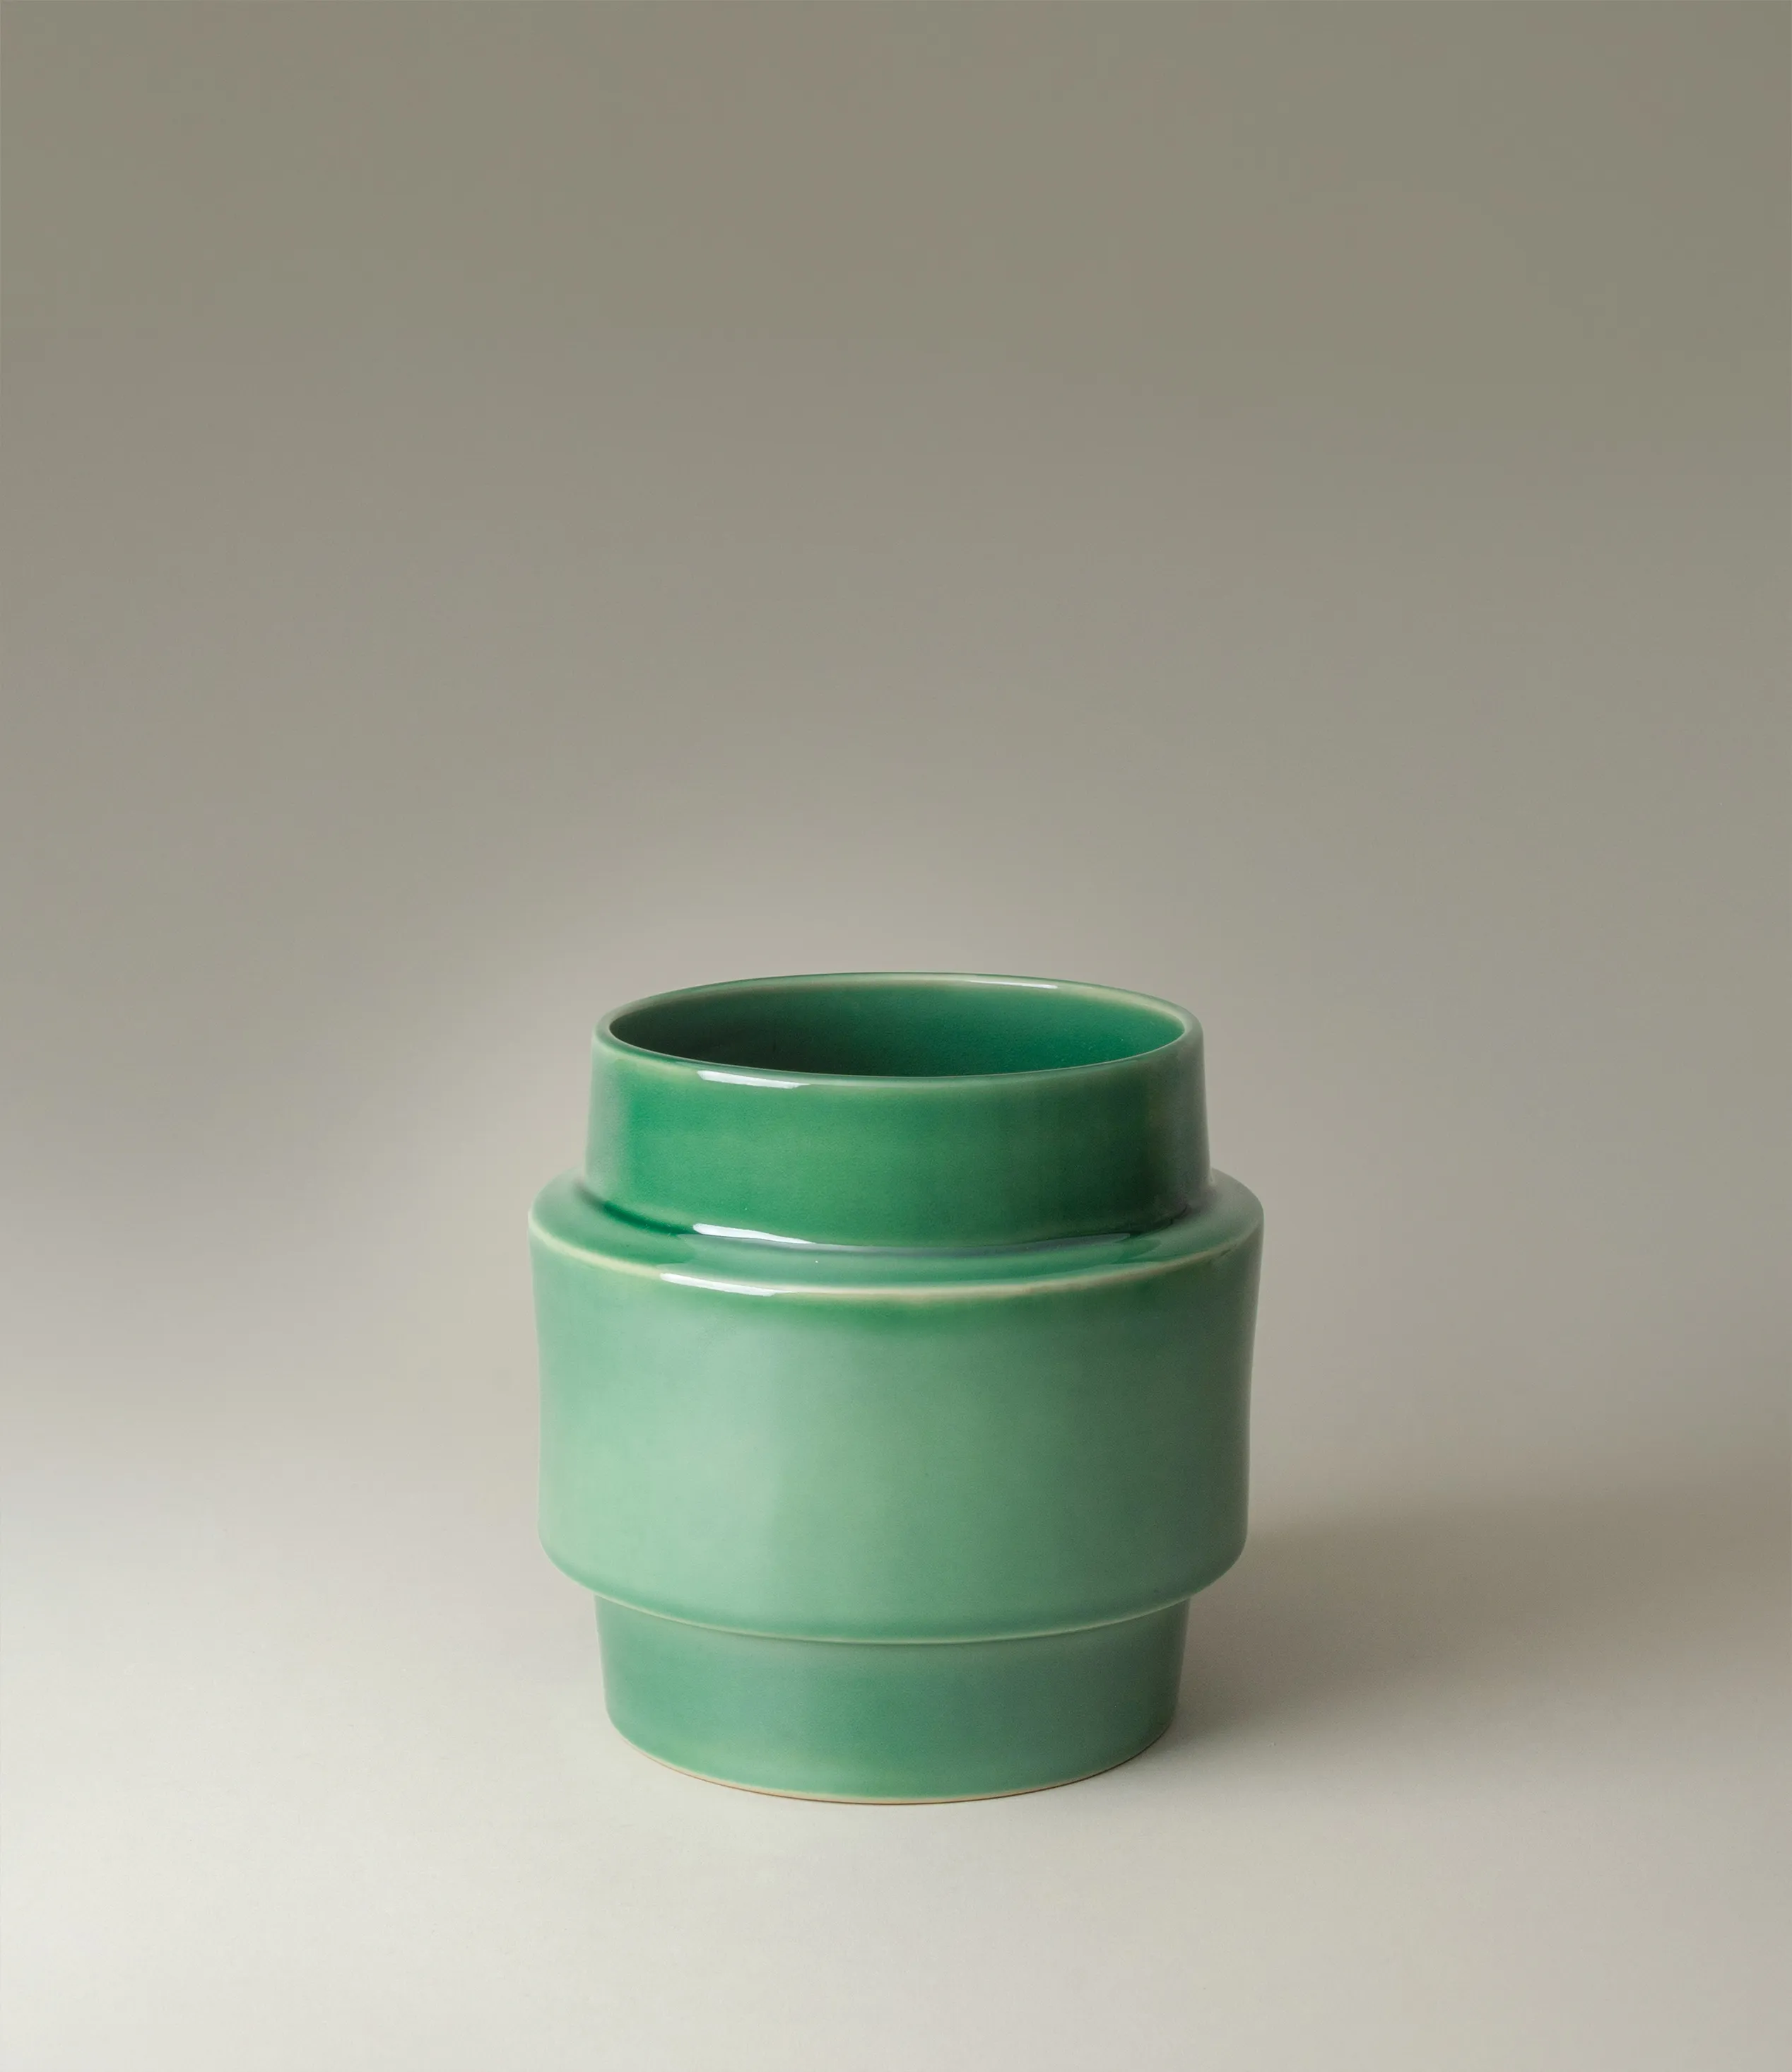 Ne Buoy was designed by Nova Casa Atlantica. The planter has a green color with a glossy glaze. 